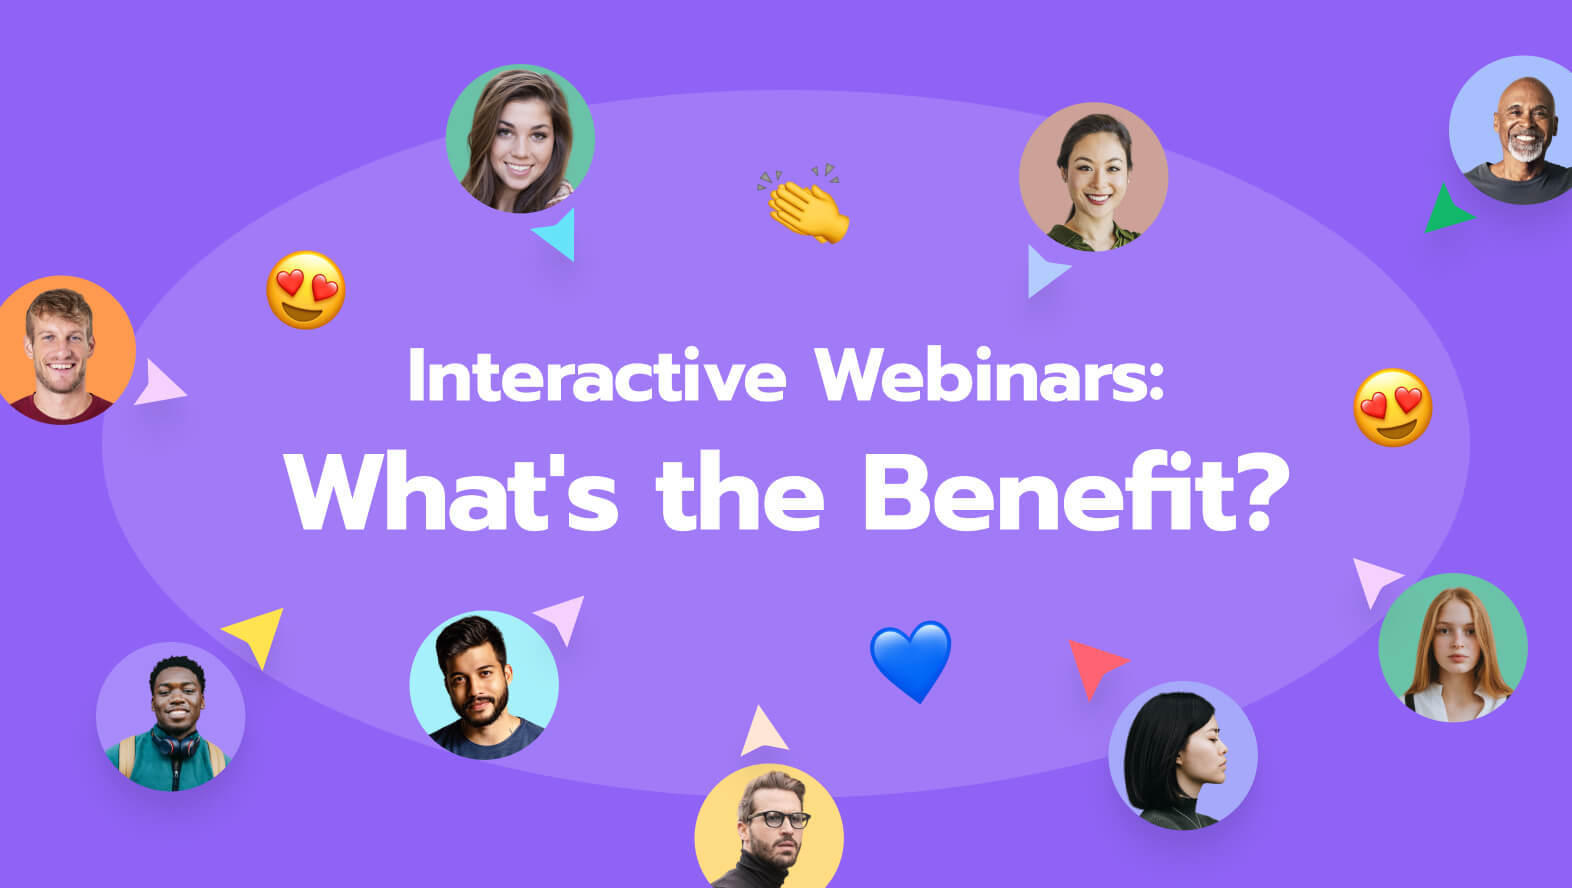 benefits of interactive webinars